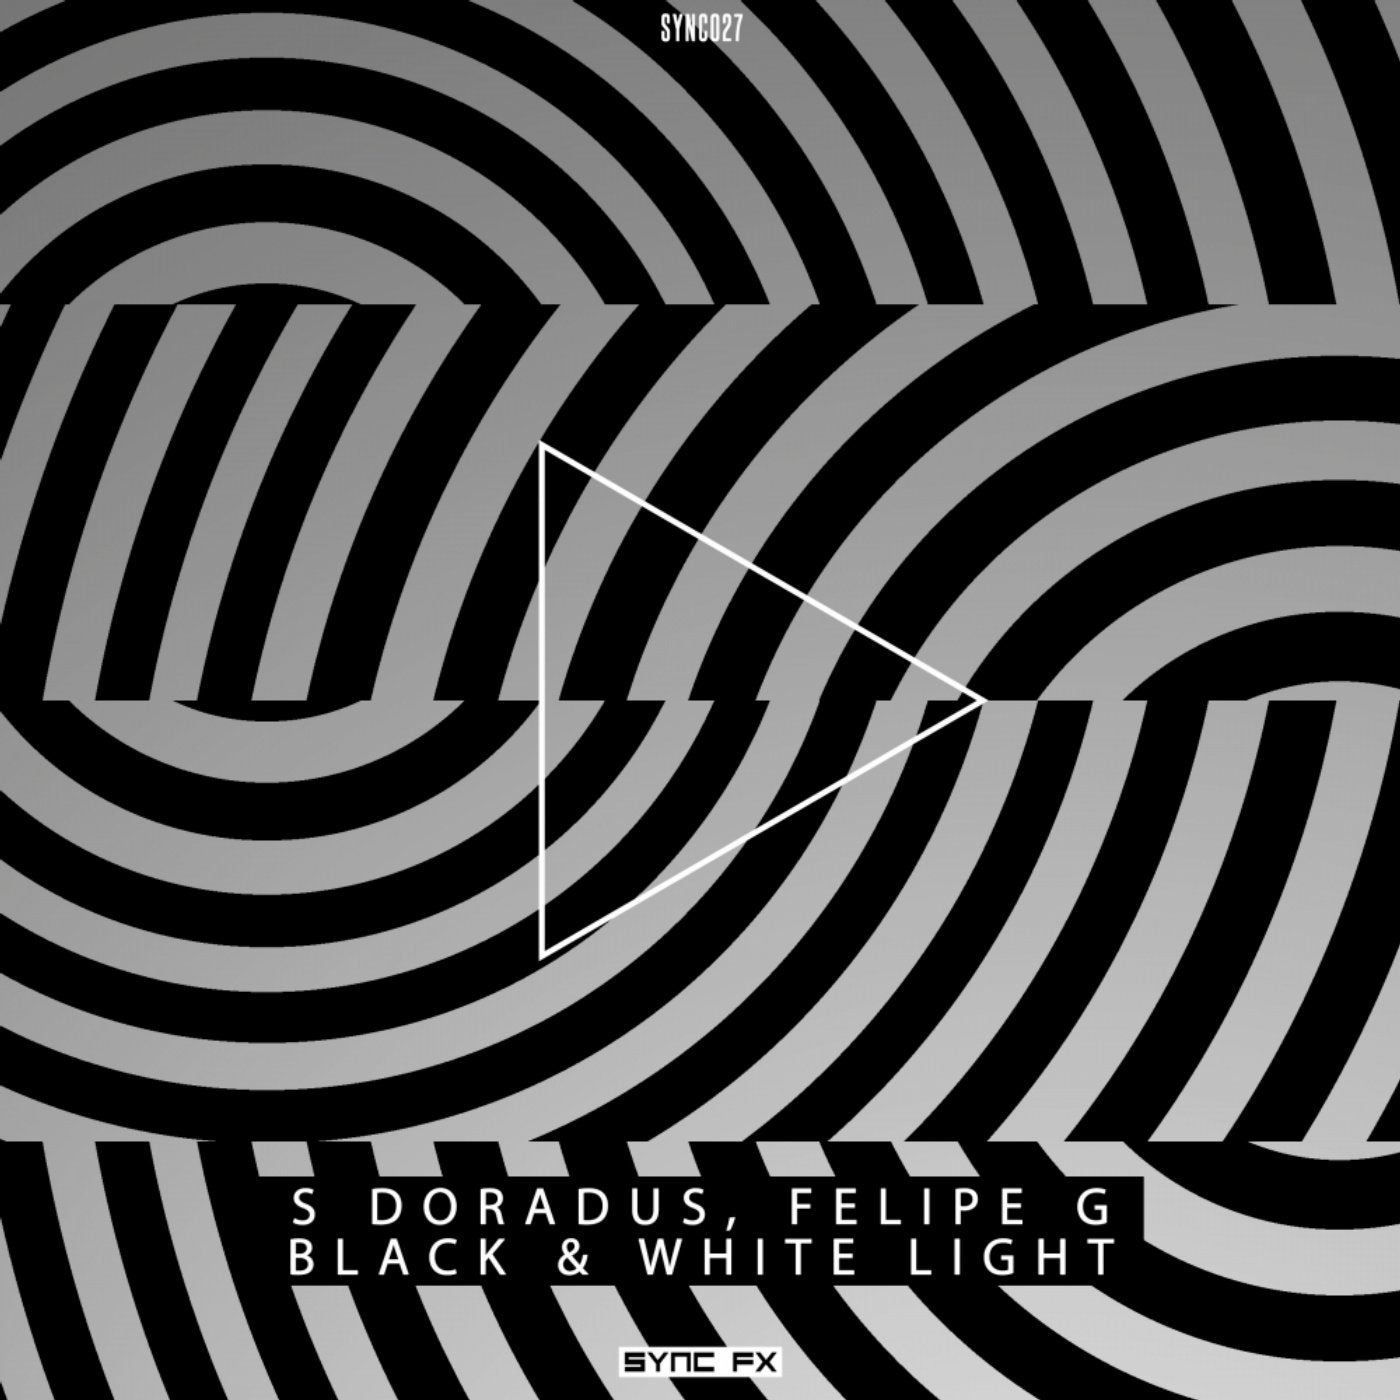 Black & White Light